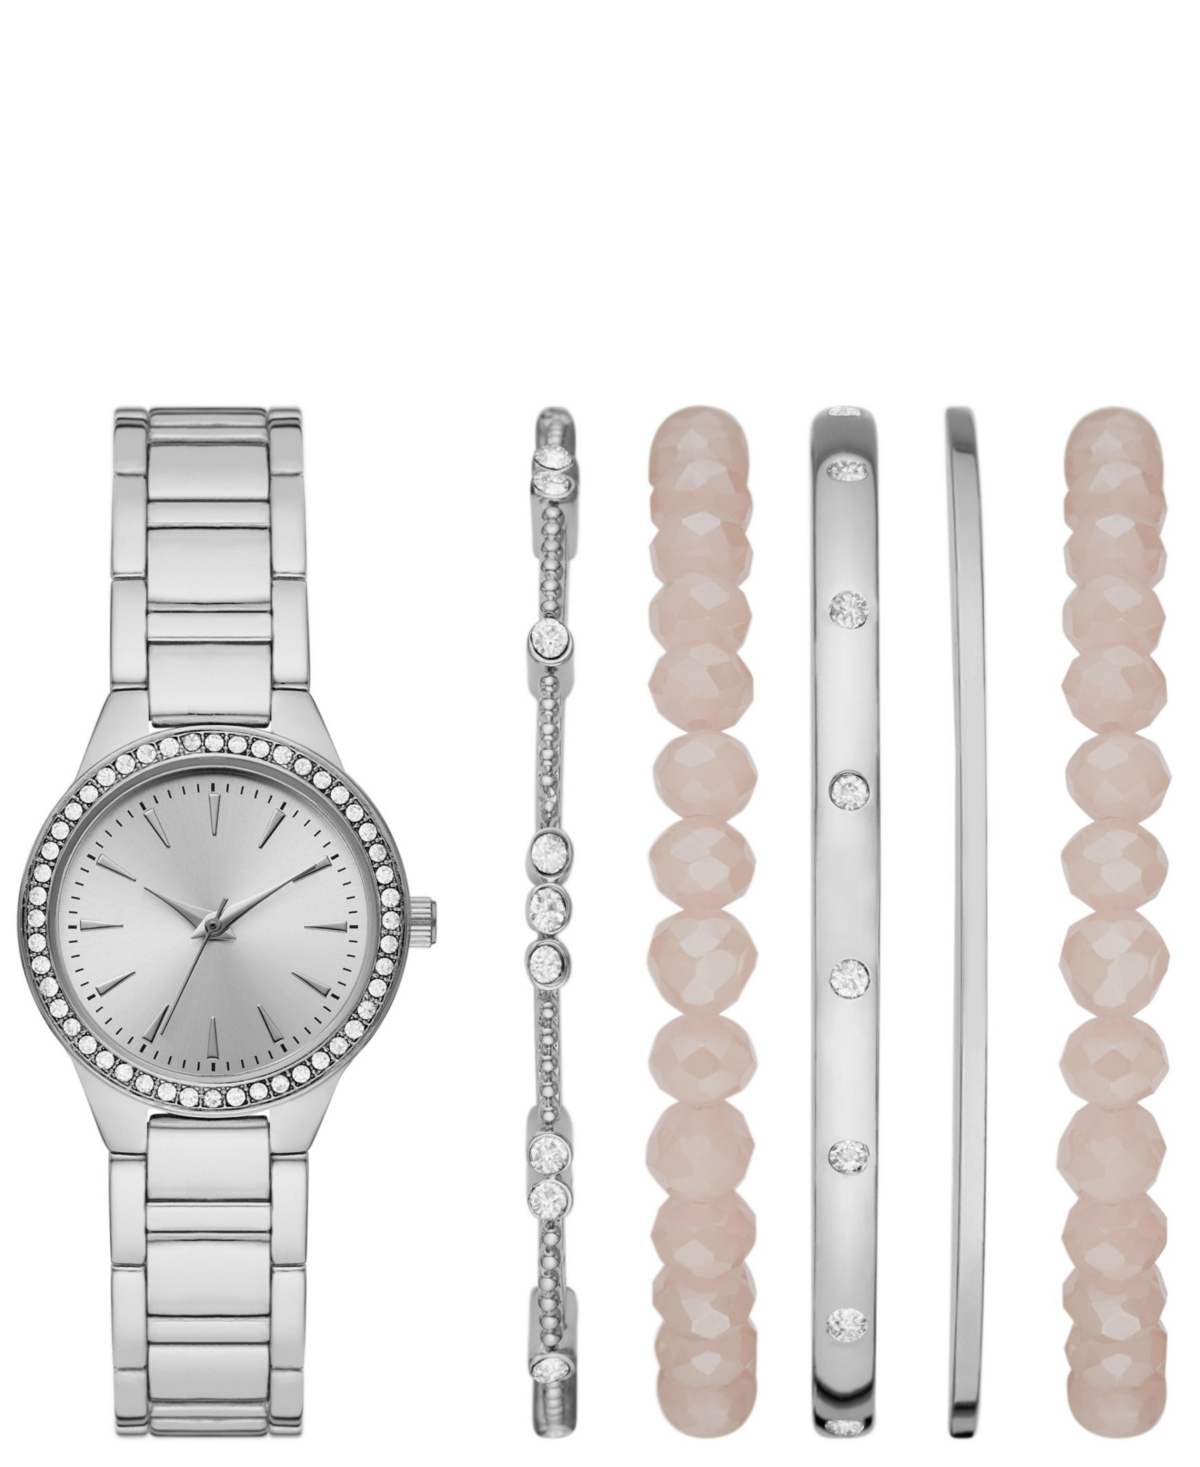 Women's Silver Bracelet Watch Gift Set, 30mm - Silver